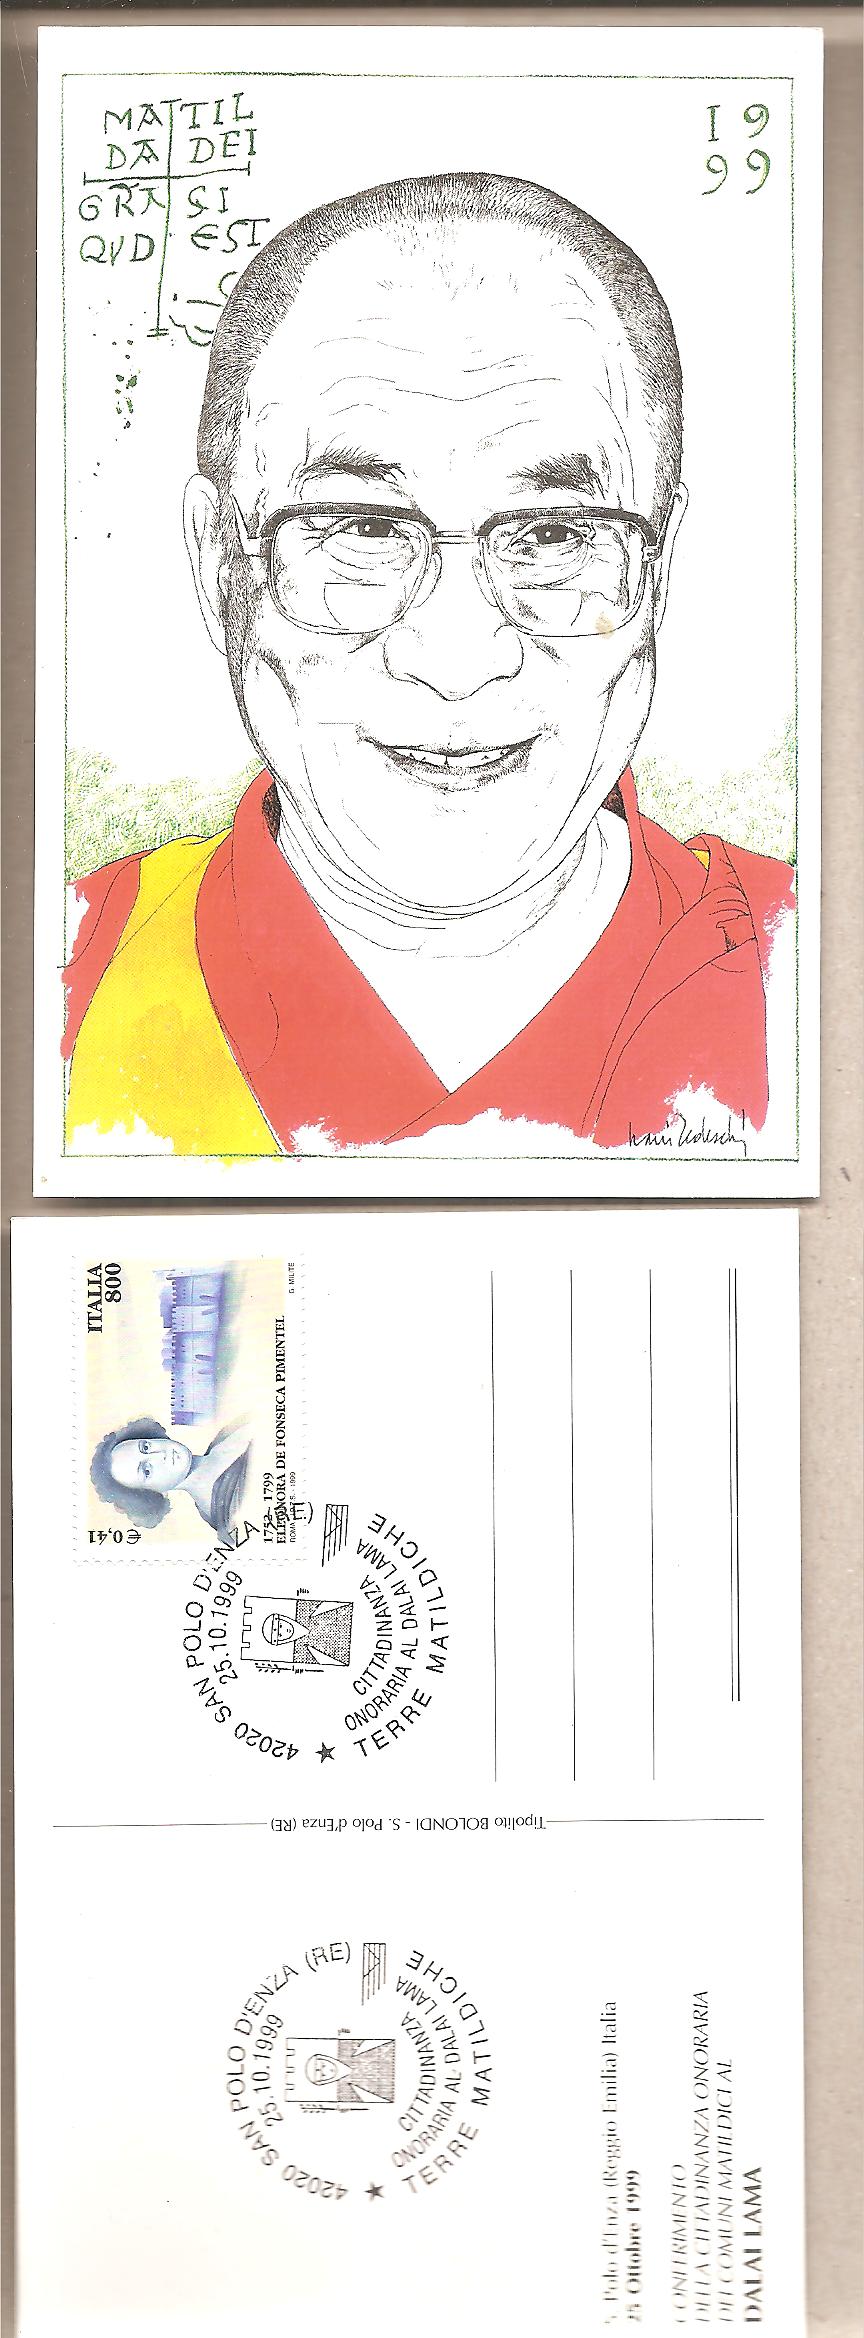 49519 - Italia - cartolina con annullo speciale: Cittadinanza Onoraria al Dalai Lama 1999 * G